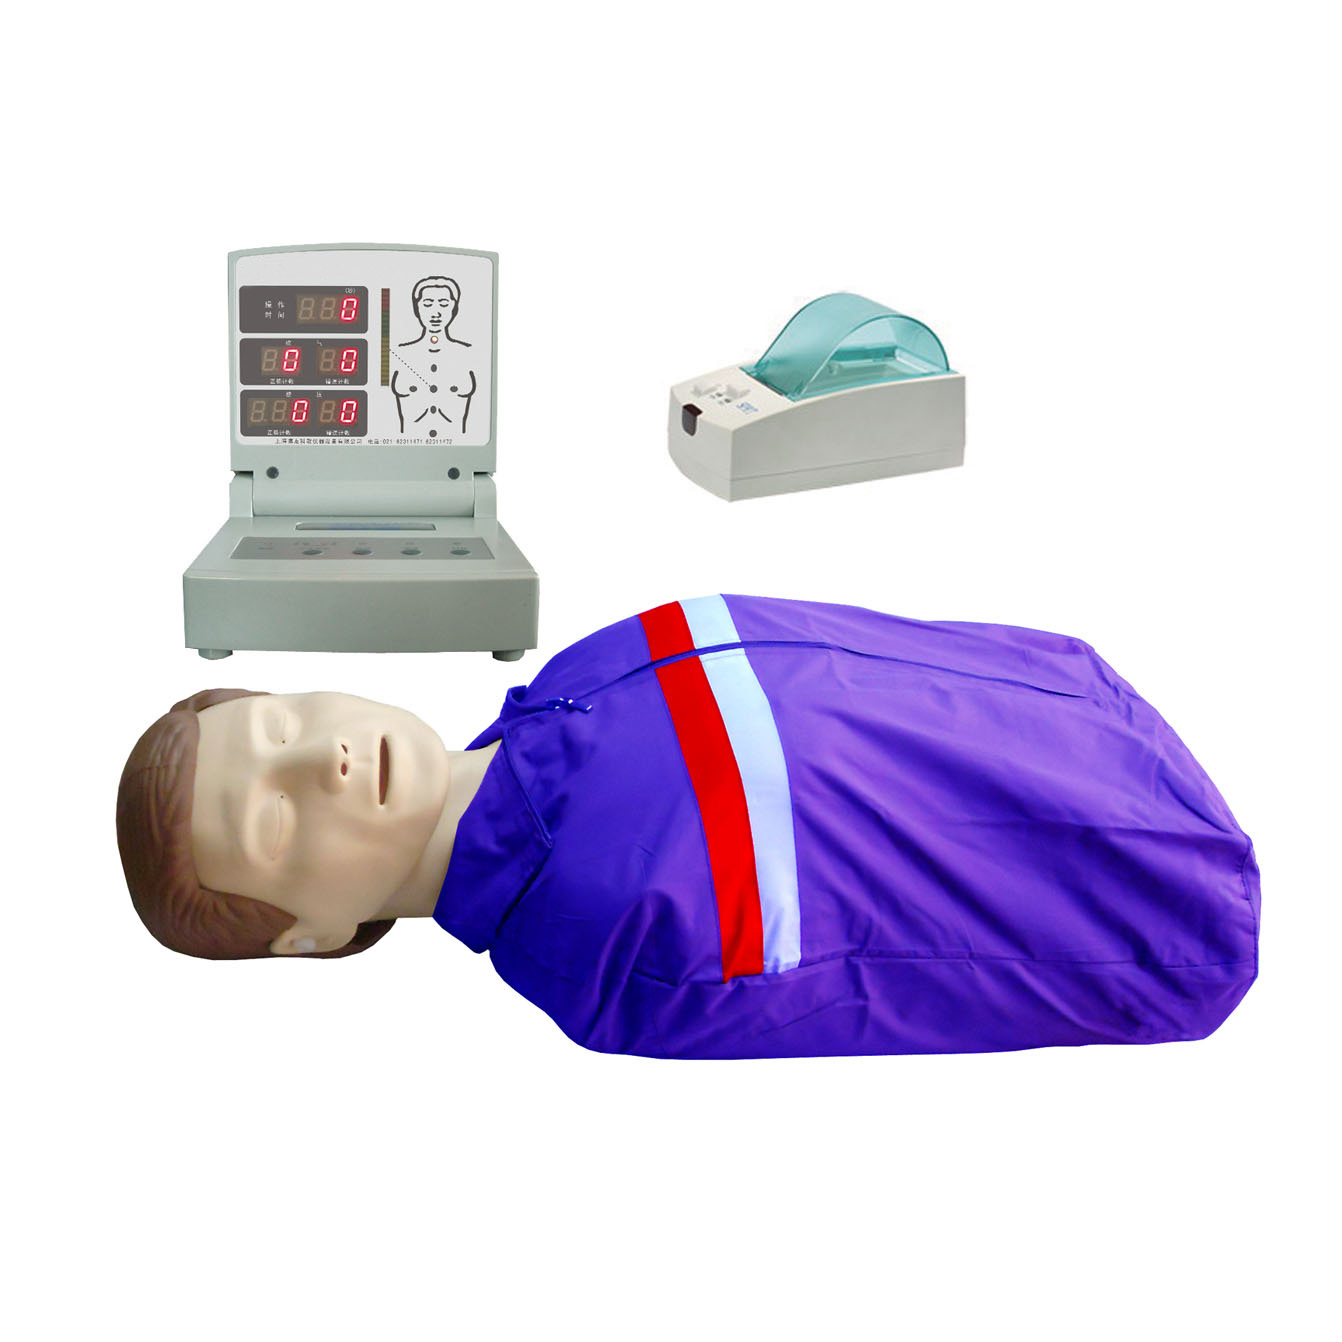 半身心肺复苏模型CPR260